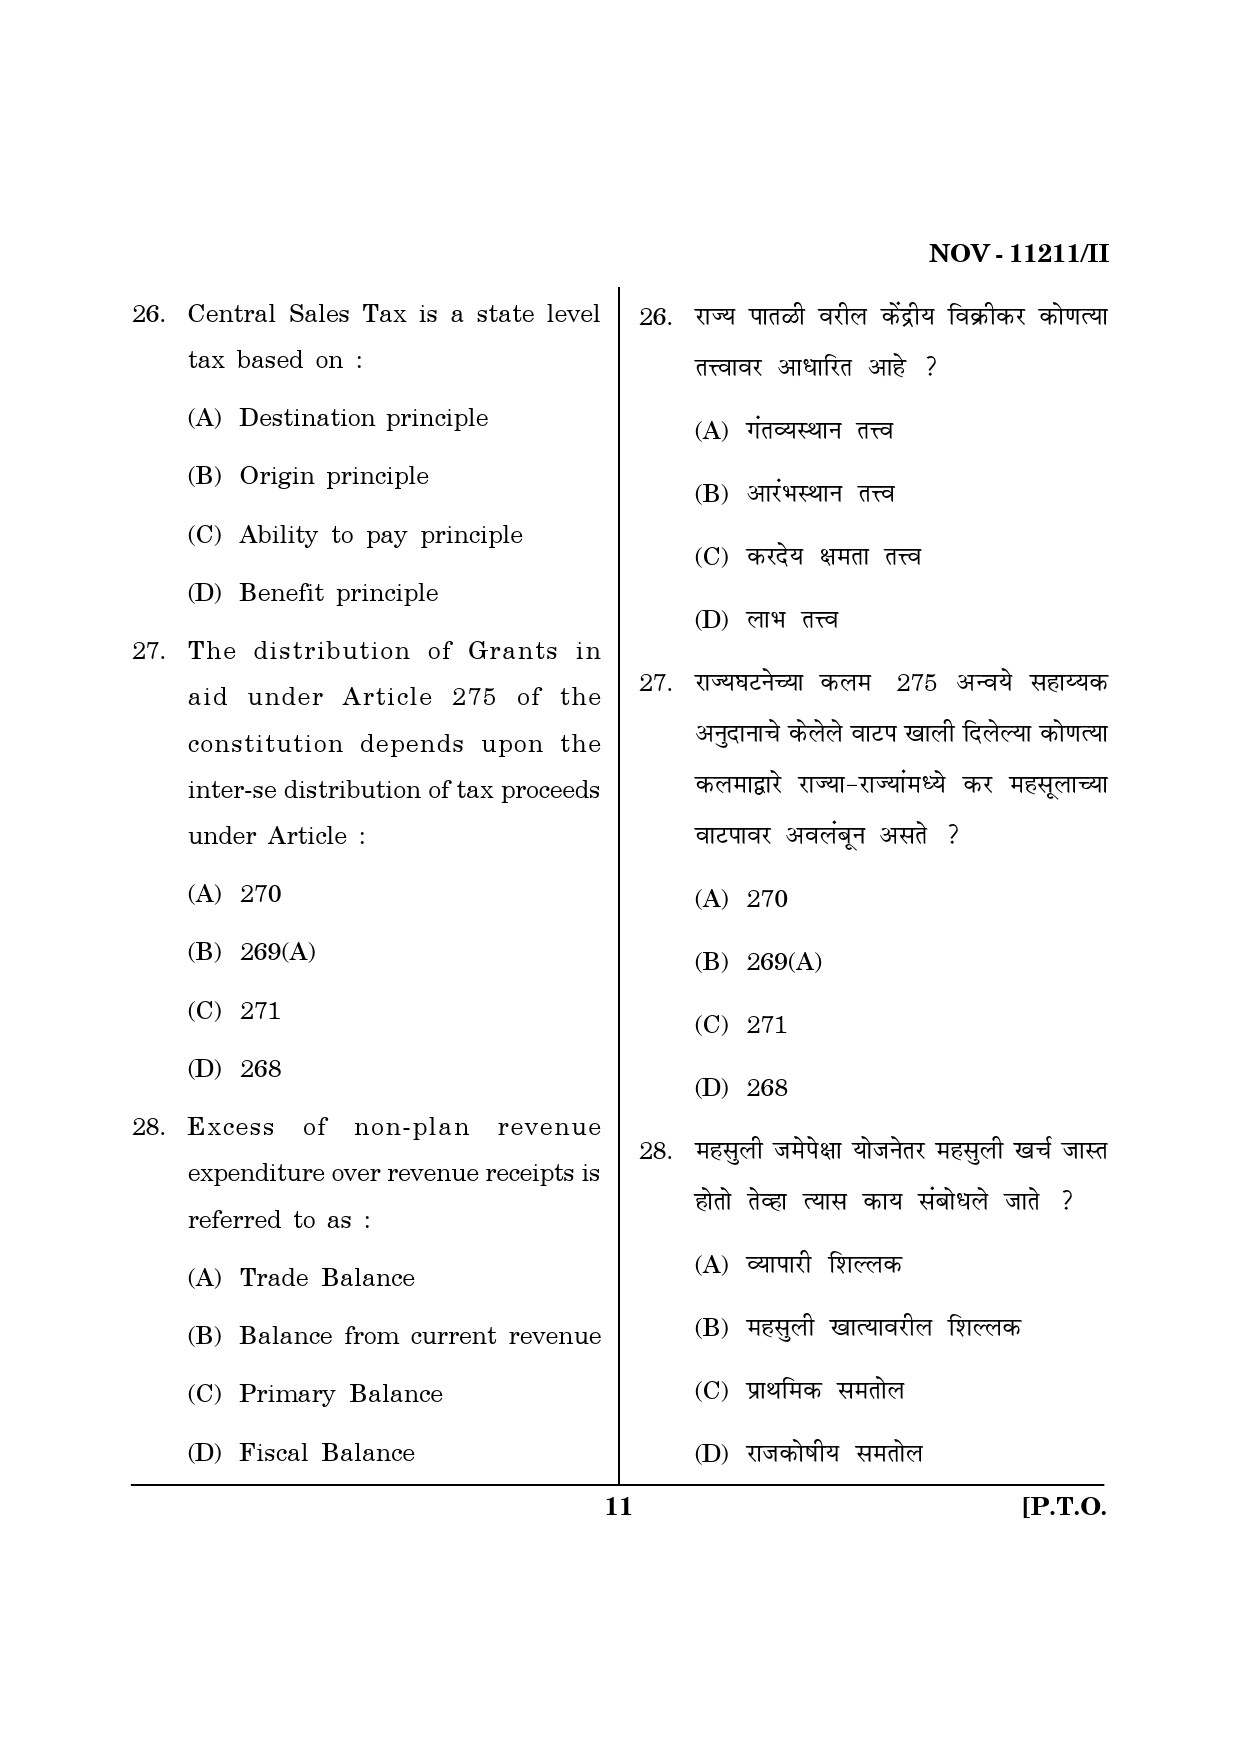 Maharashtra SET Economics Question Paper II November 2011 11